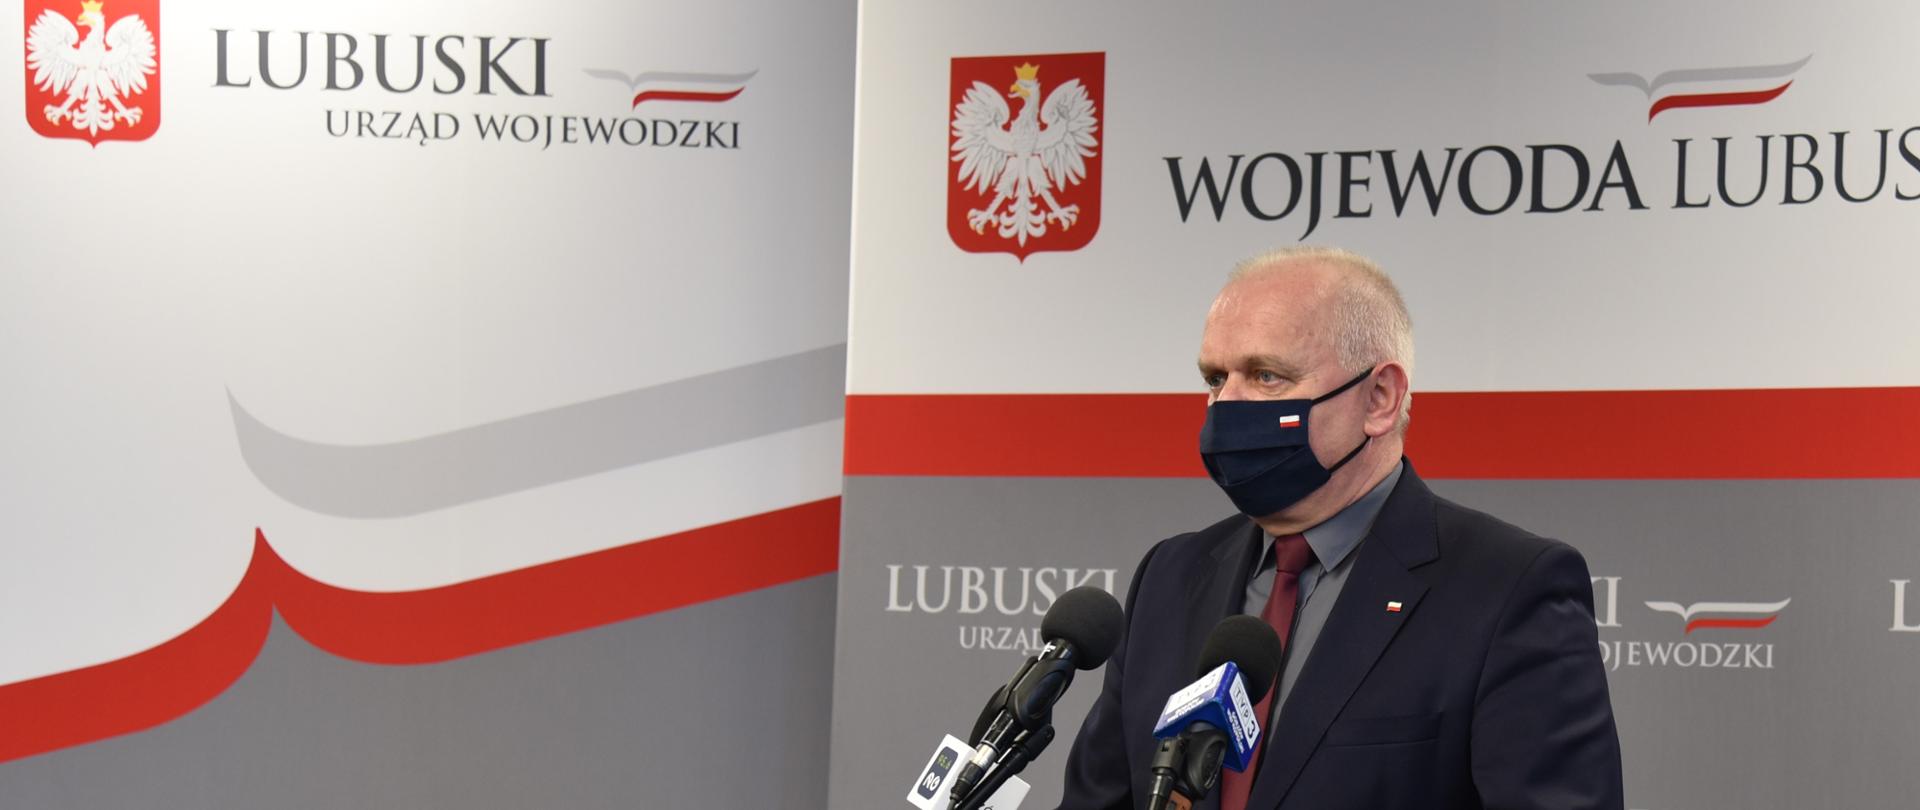 Wojewoda Władysław Dajczak stoi w ciemnym garniturze przed ustawionymi na stojakach mikrofonami. W tle, za nim stoją ścianki promocyjne urzędu i wojewody utrzymane w biało-czerwono-szarej kolorystyce. 